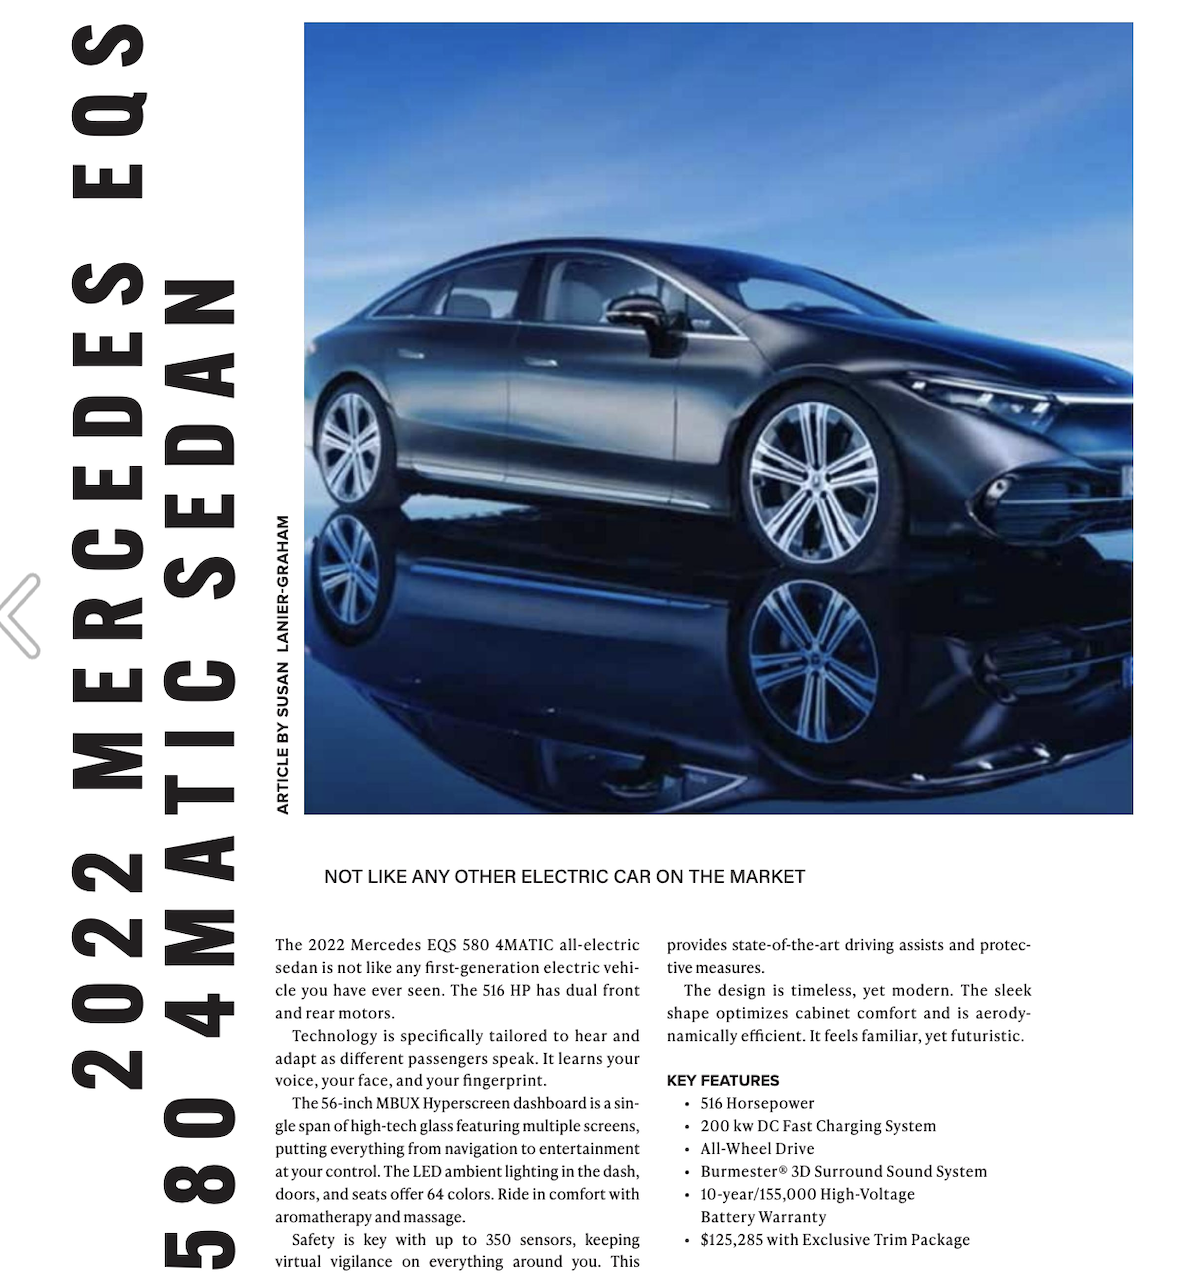 Auto Review - Mercedes EQS - Susan Lanier-Graham